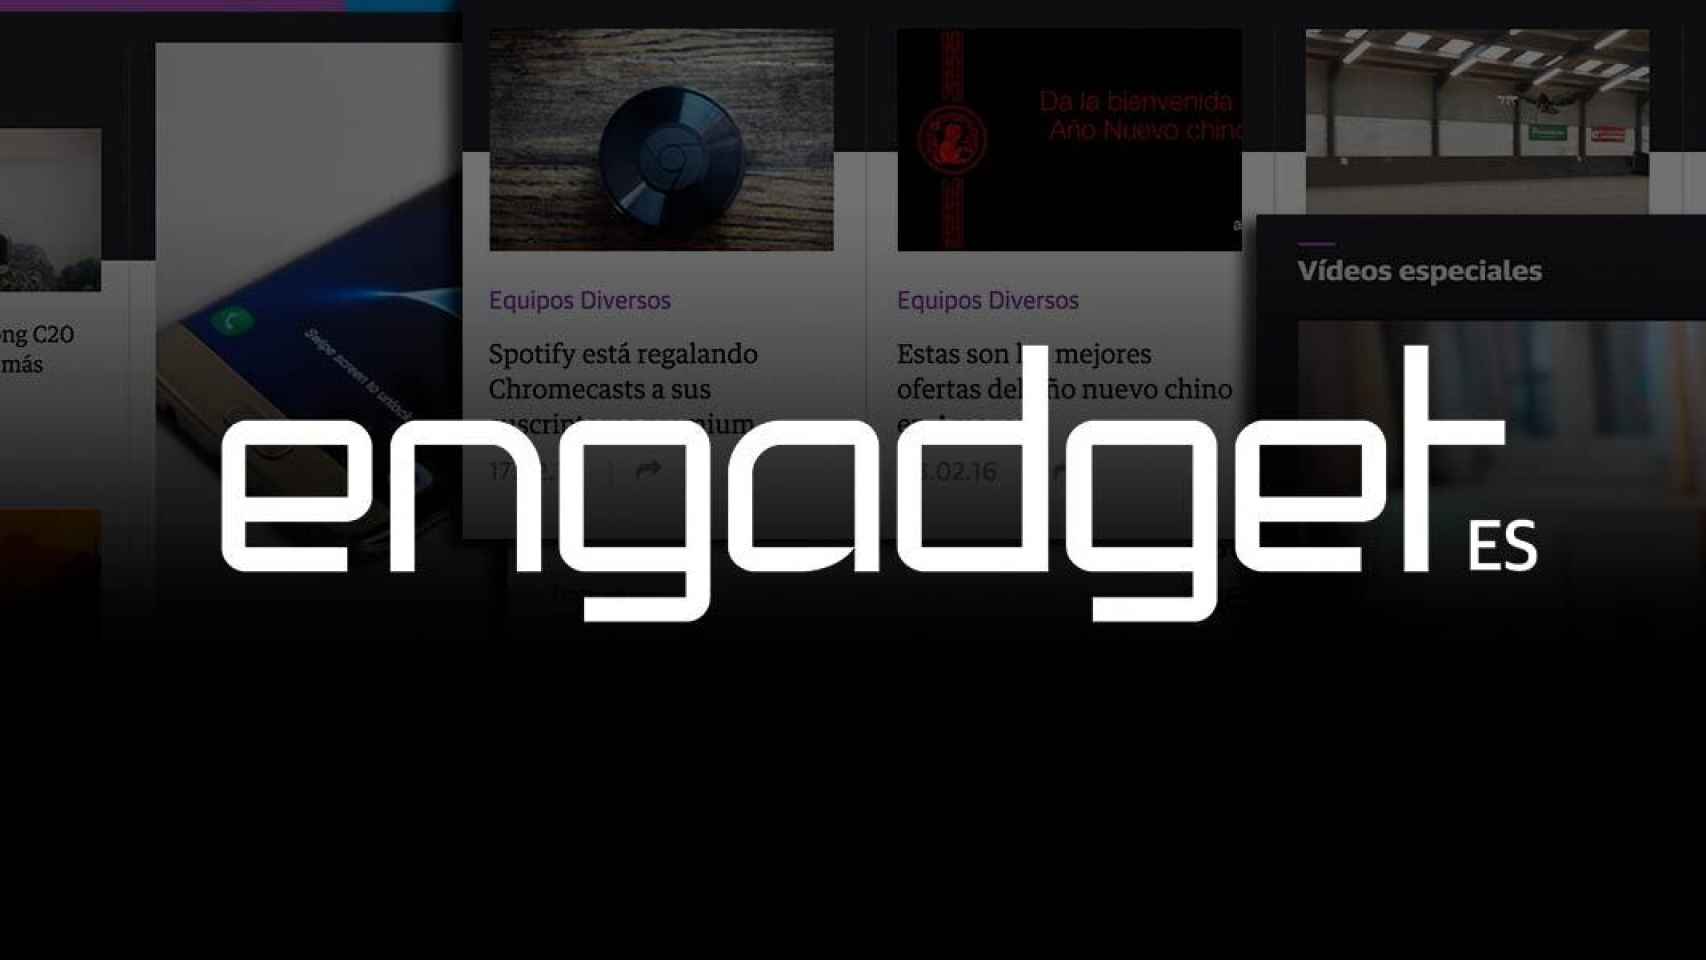 Cierra Engadget en español, uno de los medios pioneros en tecnología